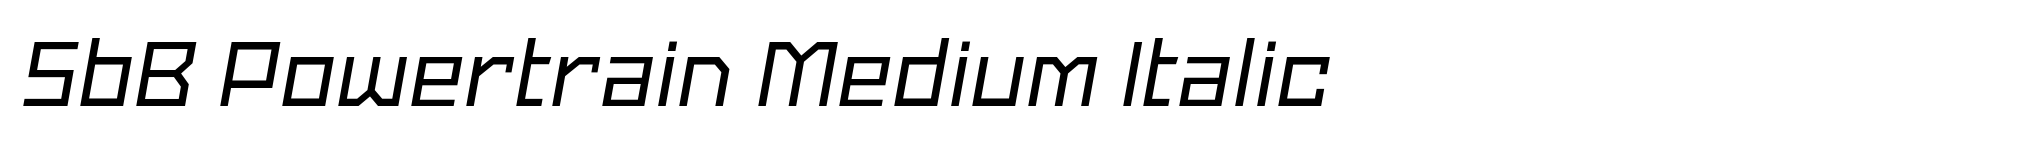 SbB Powertrain Medium Italic image